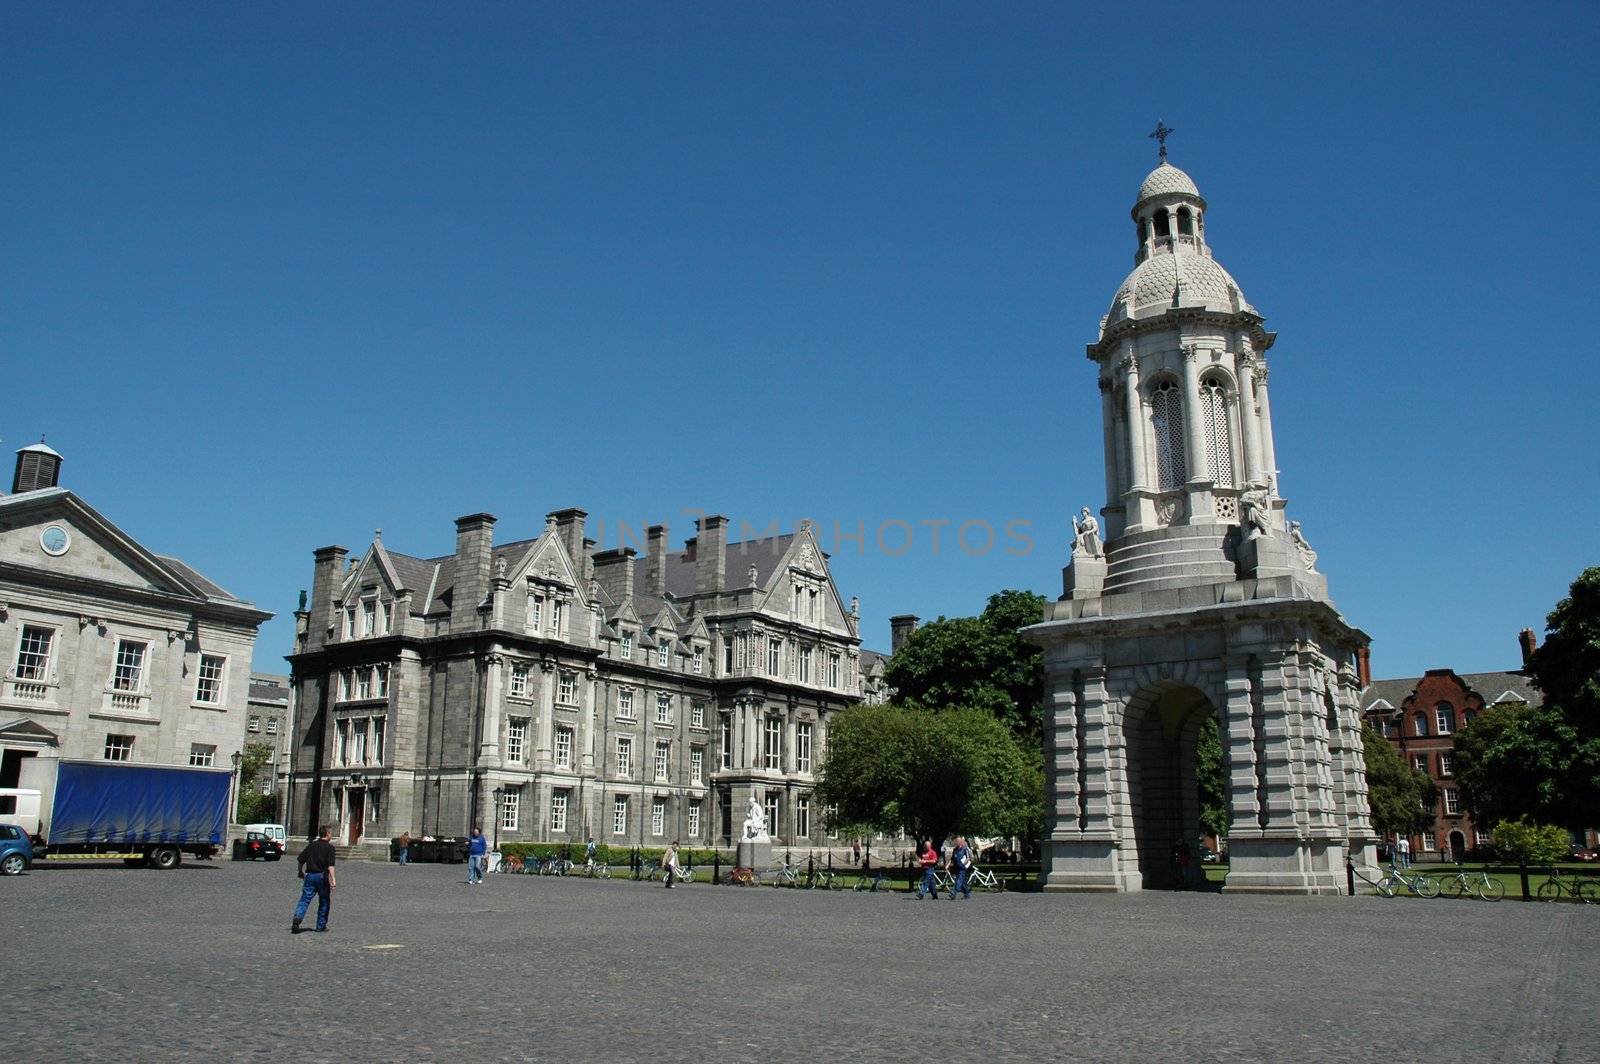 Trinity College Dublin by sjeacle